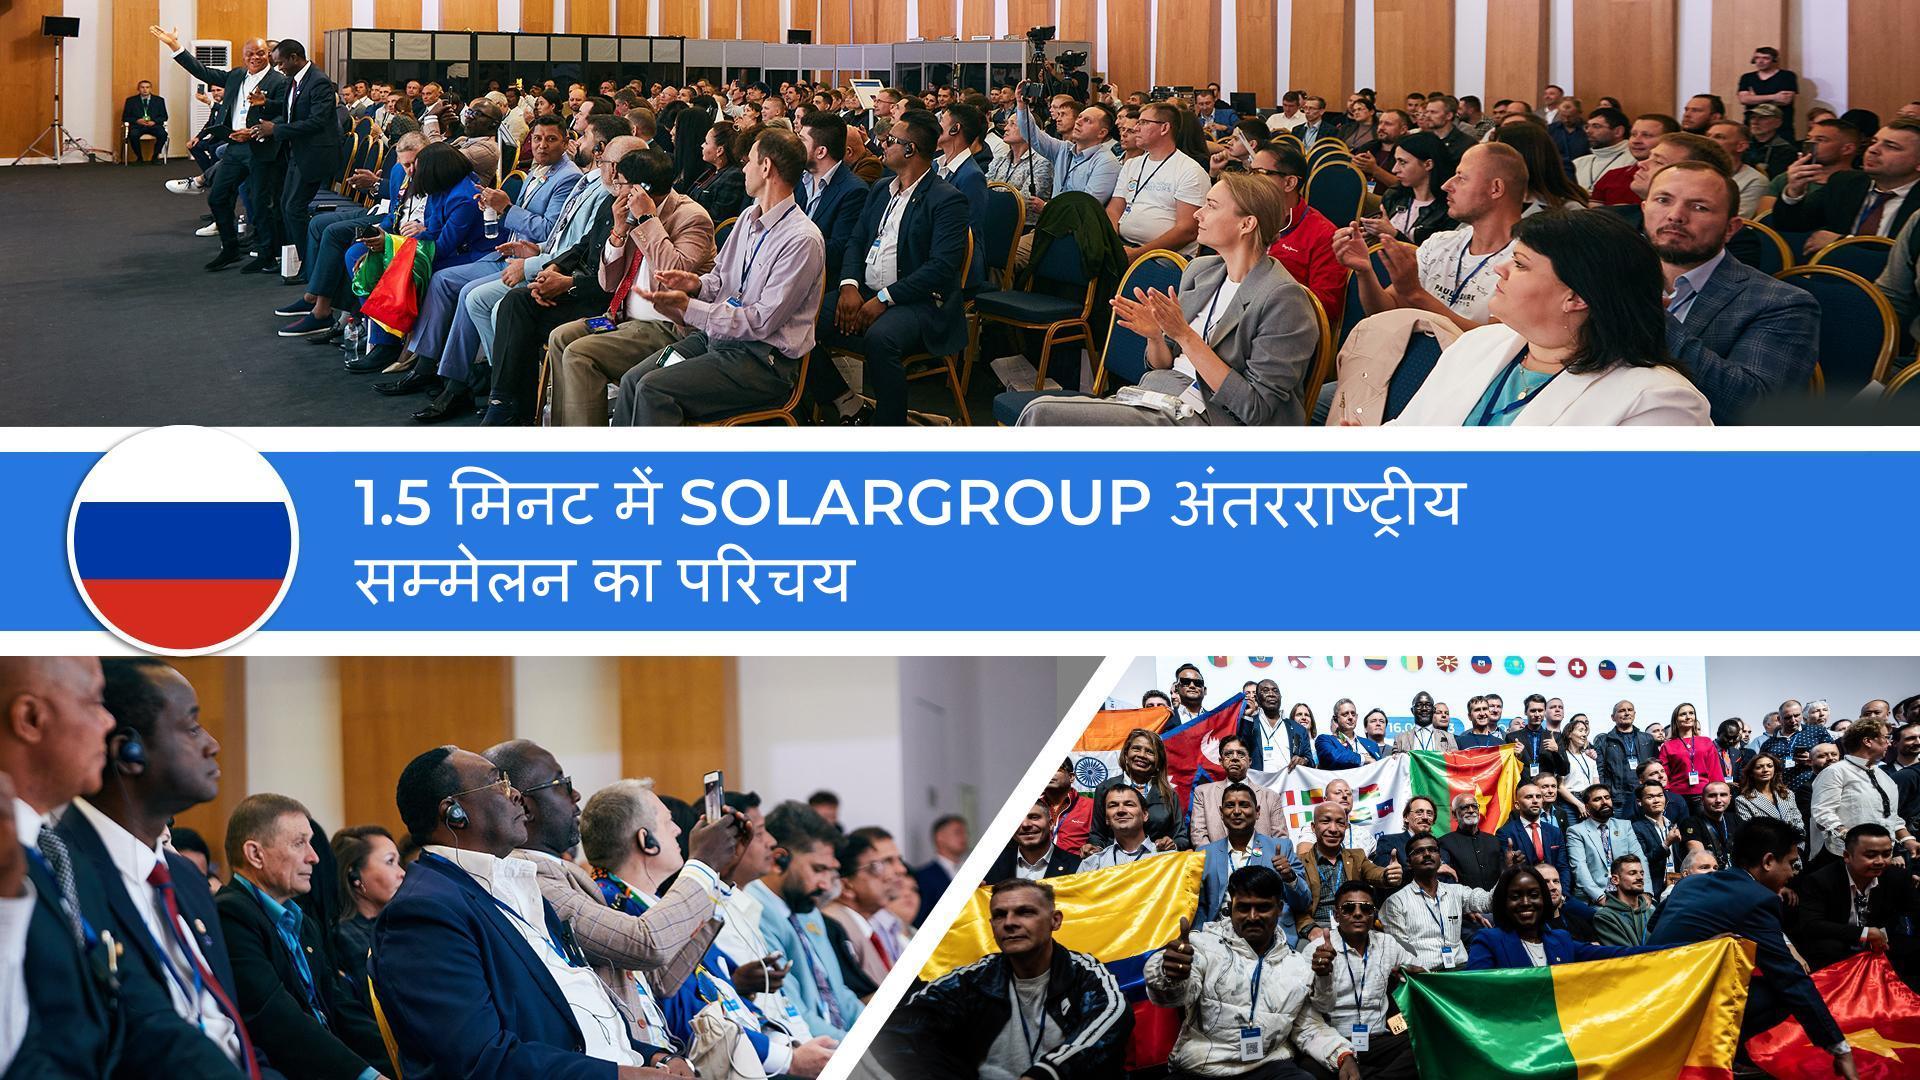 1.5 मिनट में SOLARGROUP अंतरराष्ट्रीय सम्मेलन का परिचय